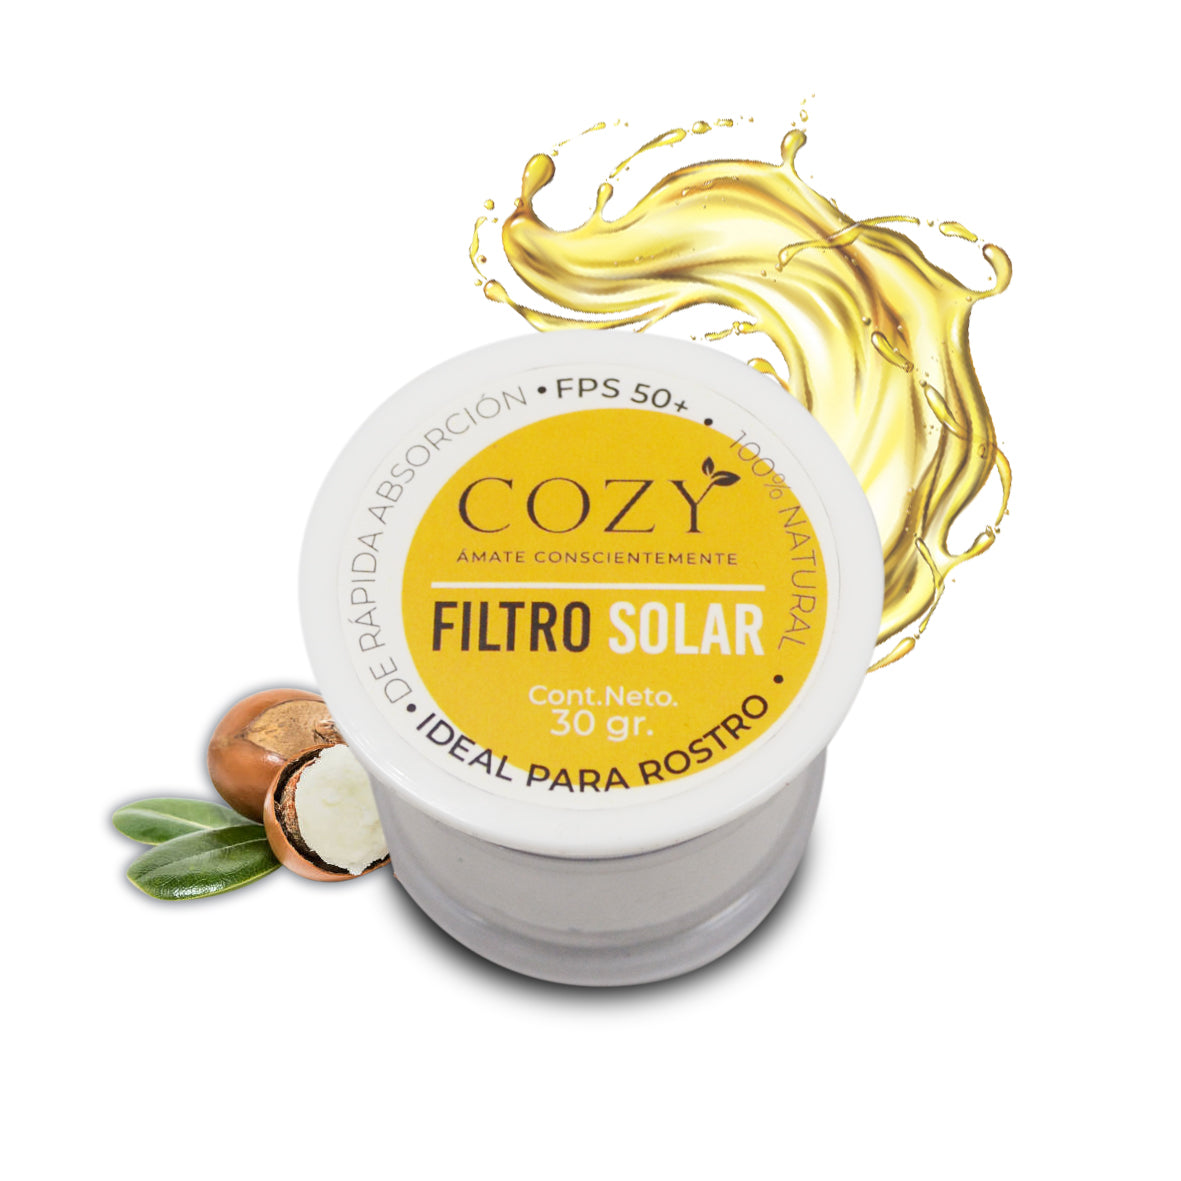 Filtro solar facial